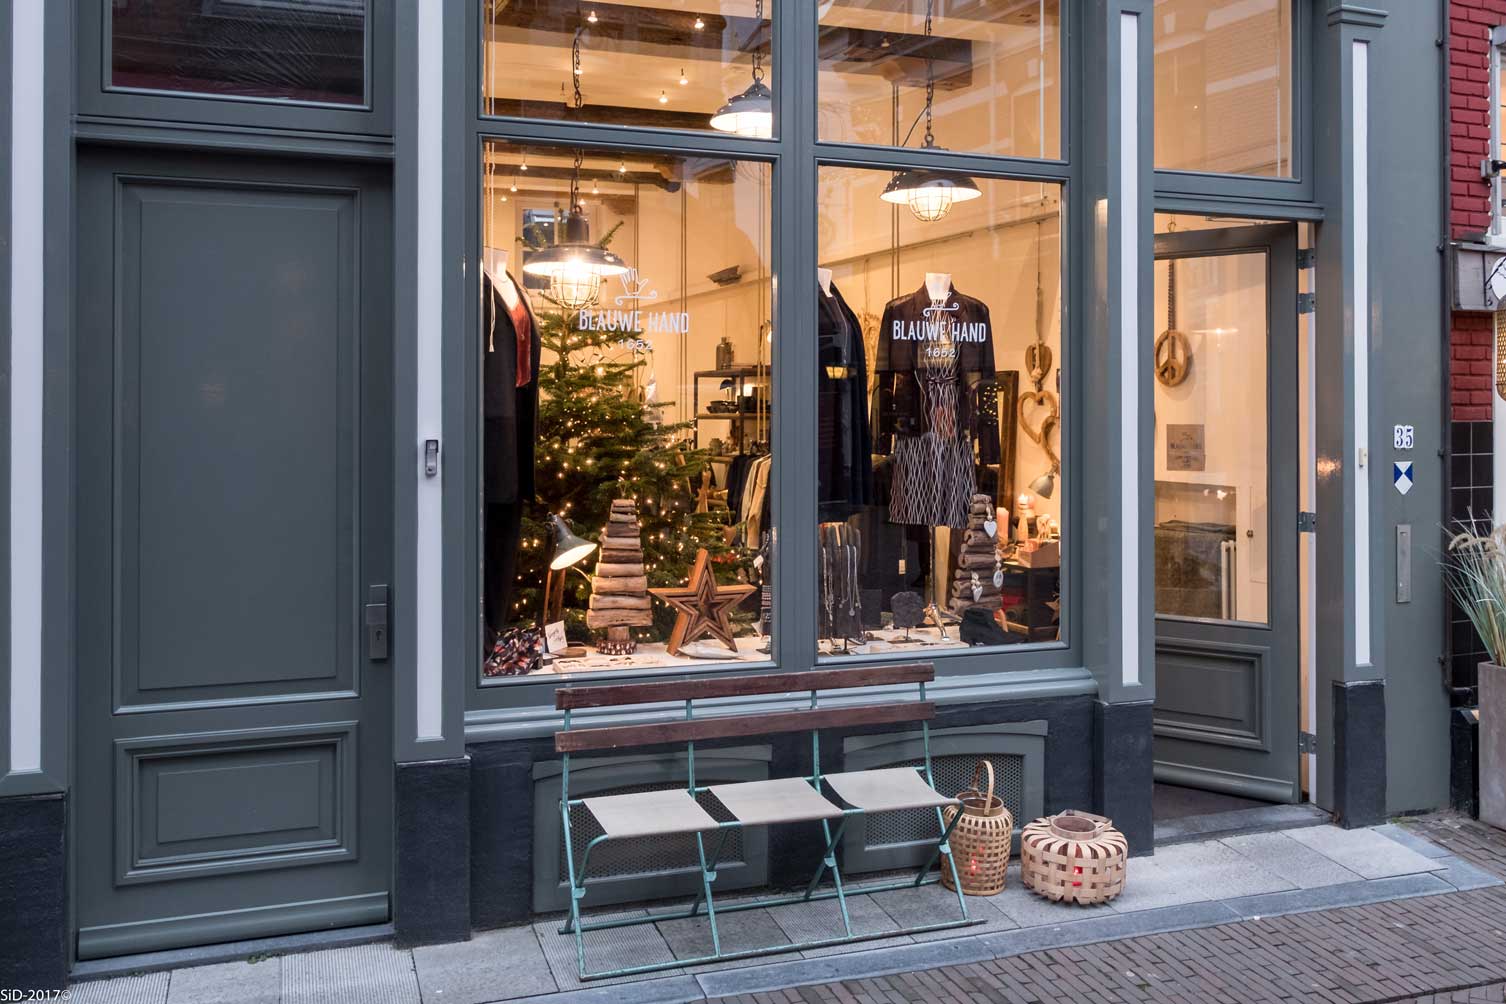 Blauwe Hand en meer winkels in Deventer vind je bij Shoppen in Deventer